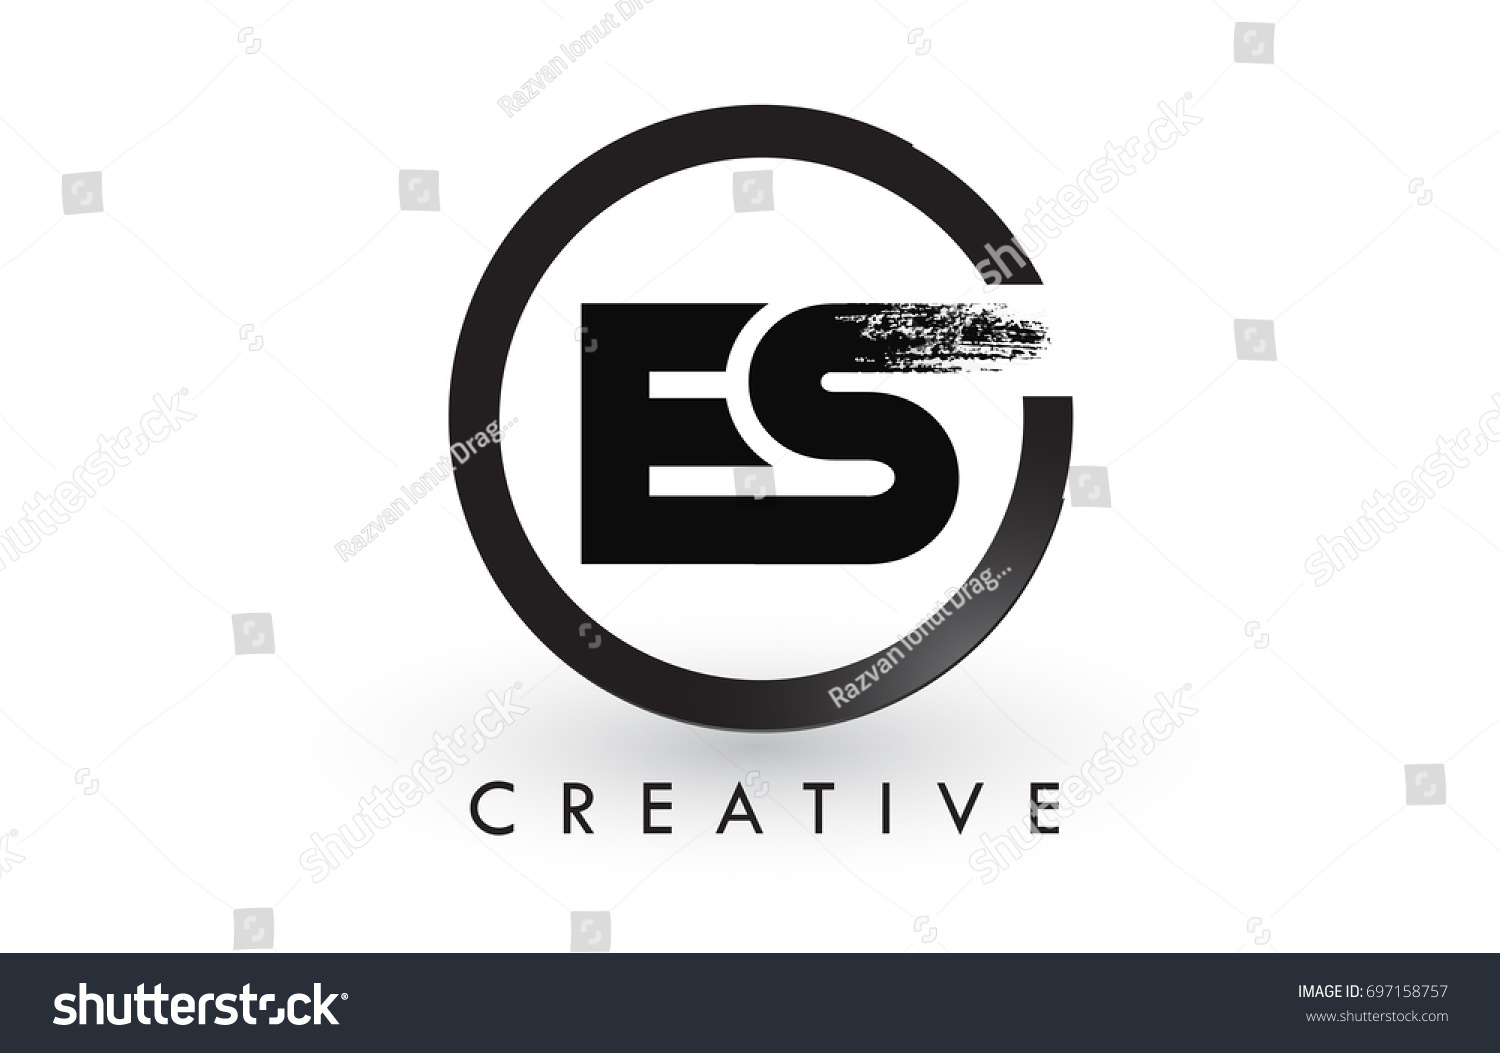 Download Es Brush Letter Logo Design Black Stock Vector Royalty Free 697158757